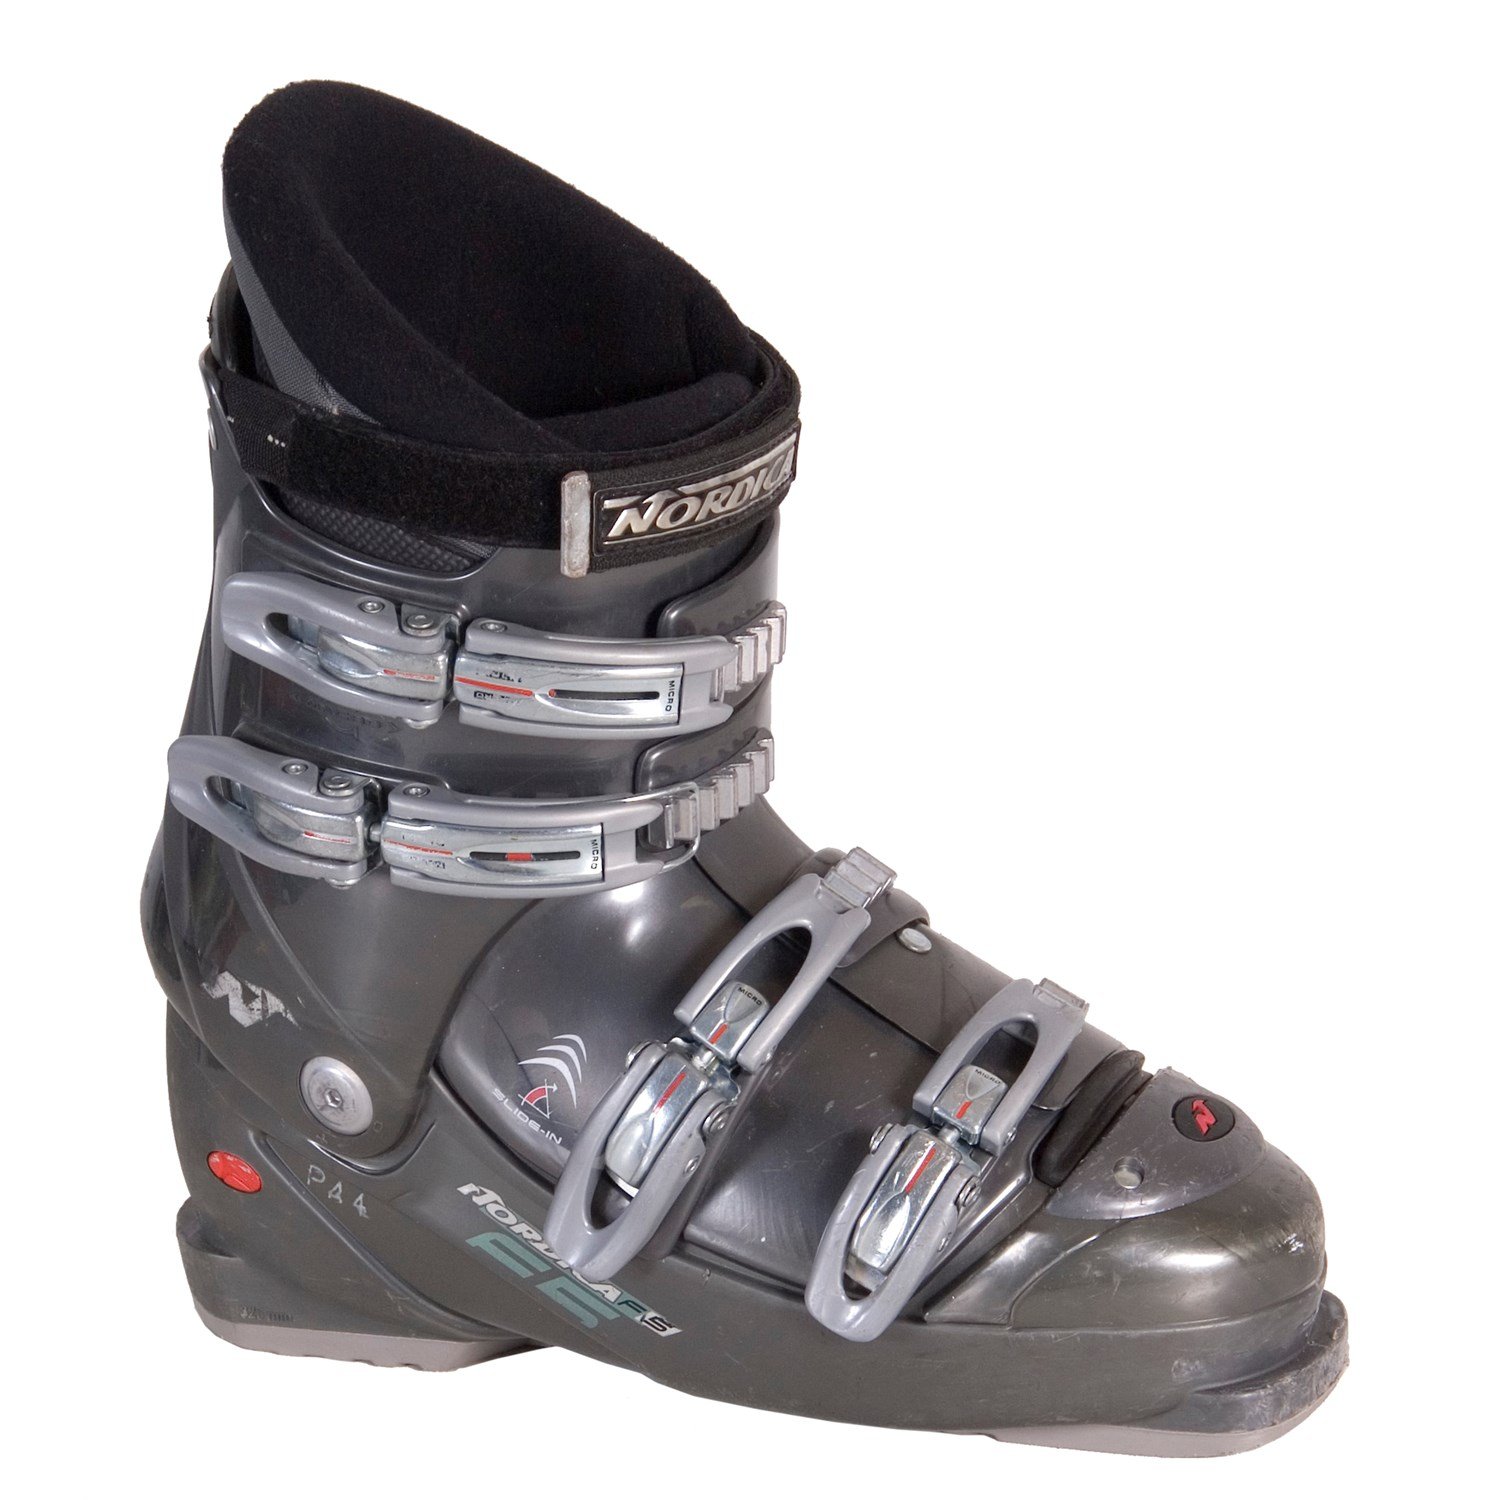 Nordica F5 Ski Boots - Used 2005 - Used 